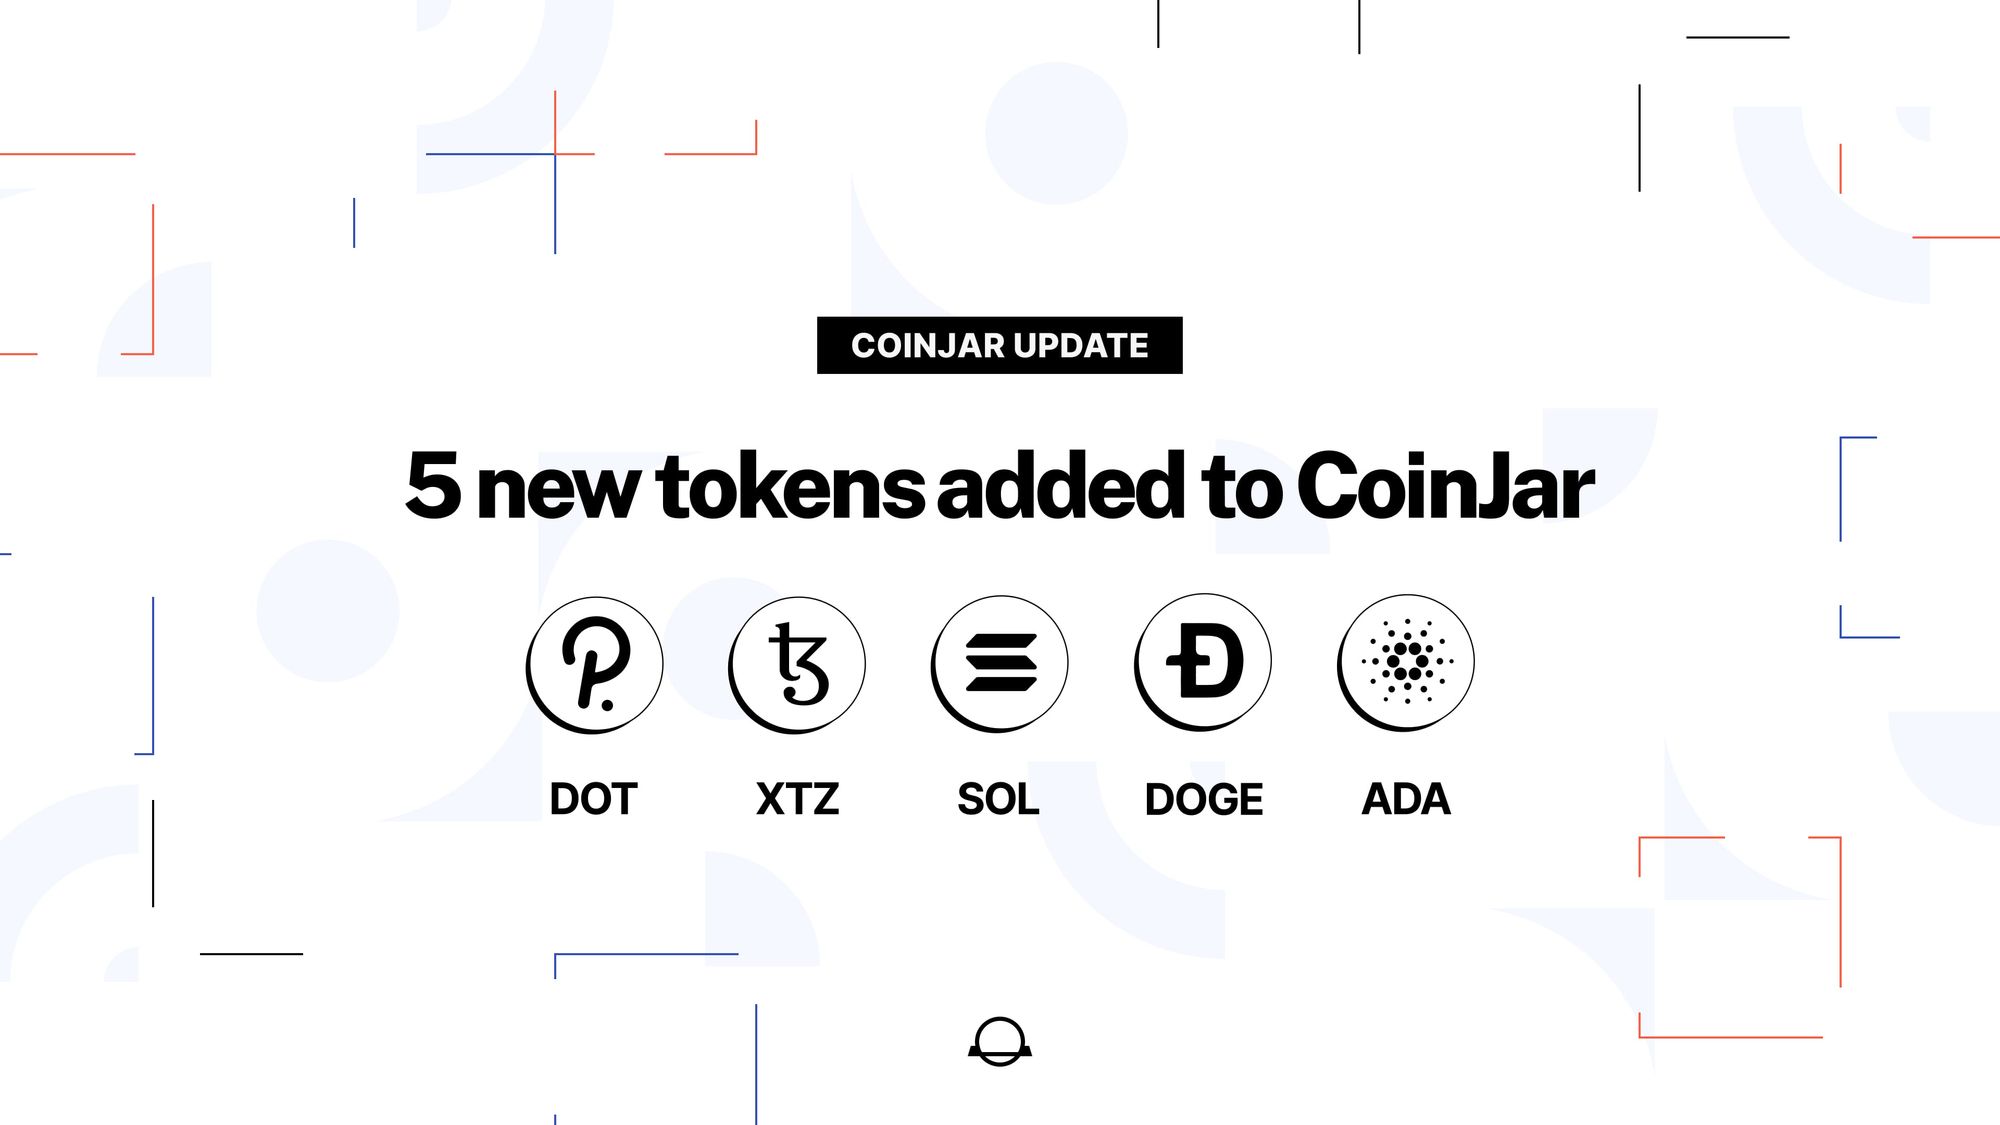 New tokens alert: DOGE, ADA, SOL, XTZ & DOT have arrived